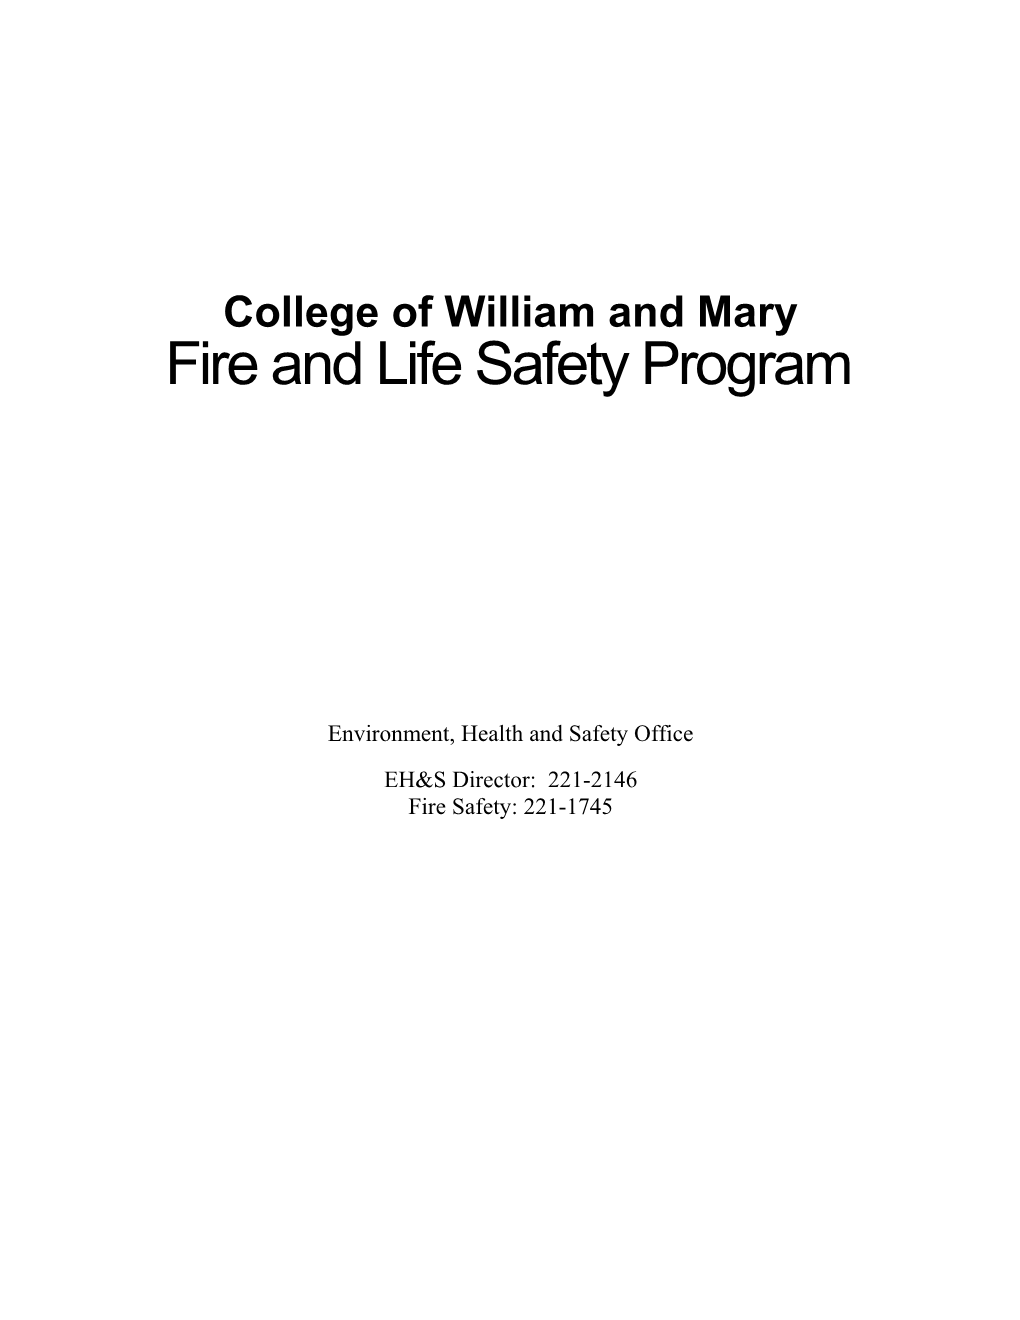 Fire Life Safety Program